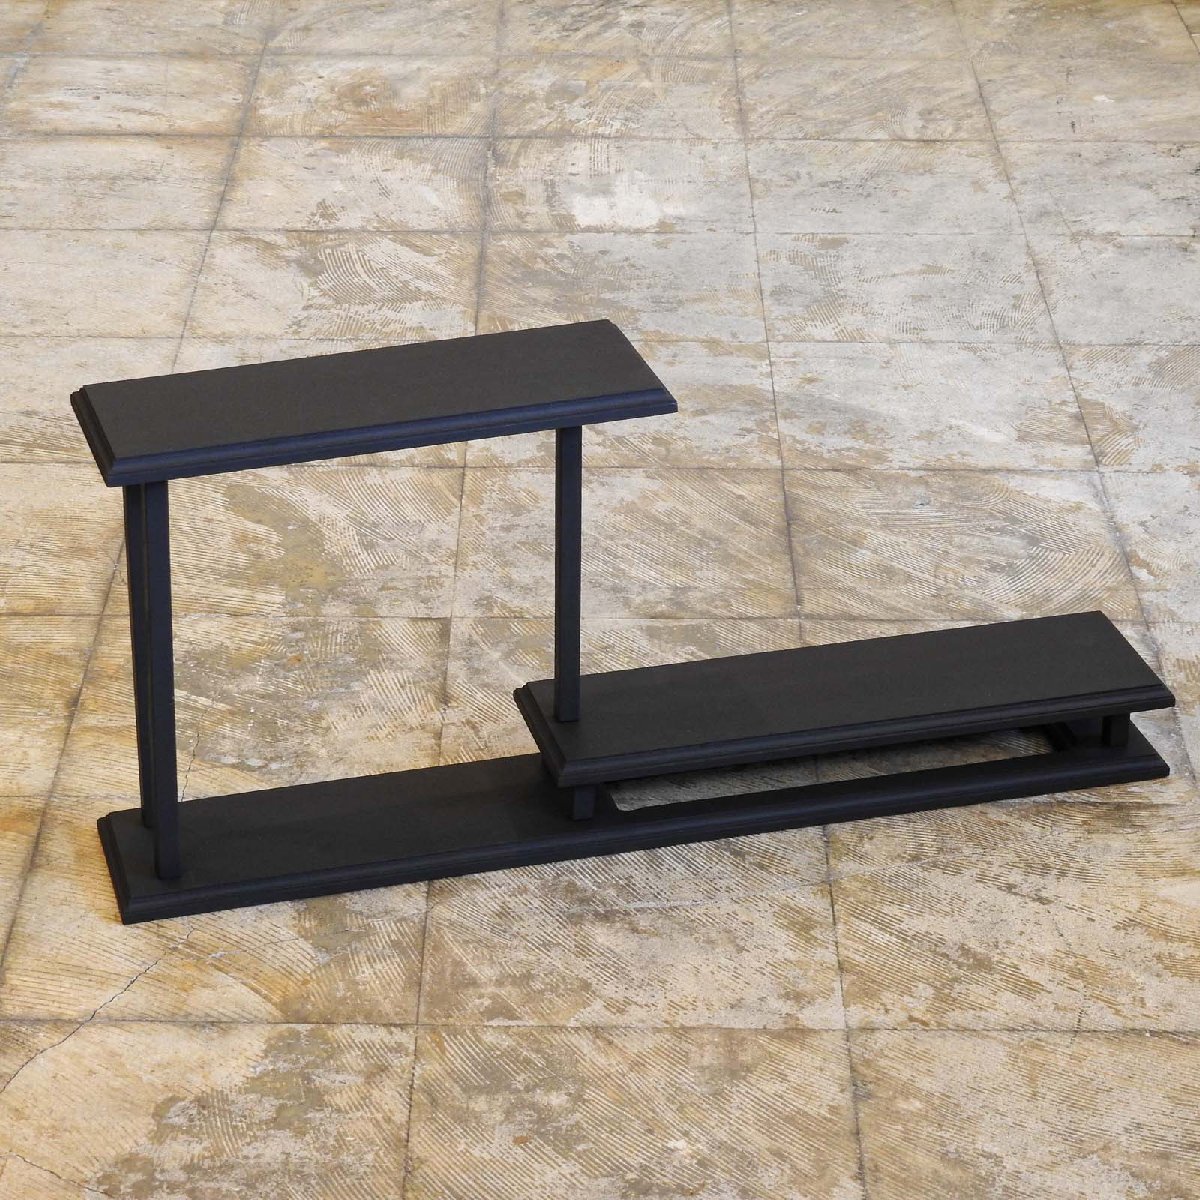 ふるい黒色の飾り棚 / 無垢材 展示台 卓上収納 スパイスラック HK-a-01554